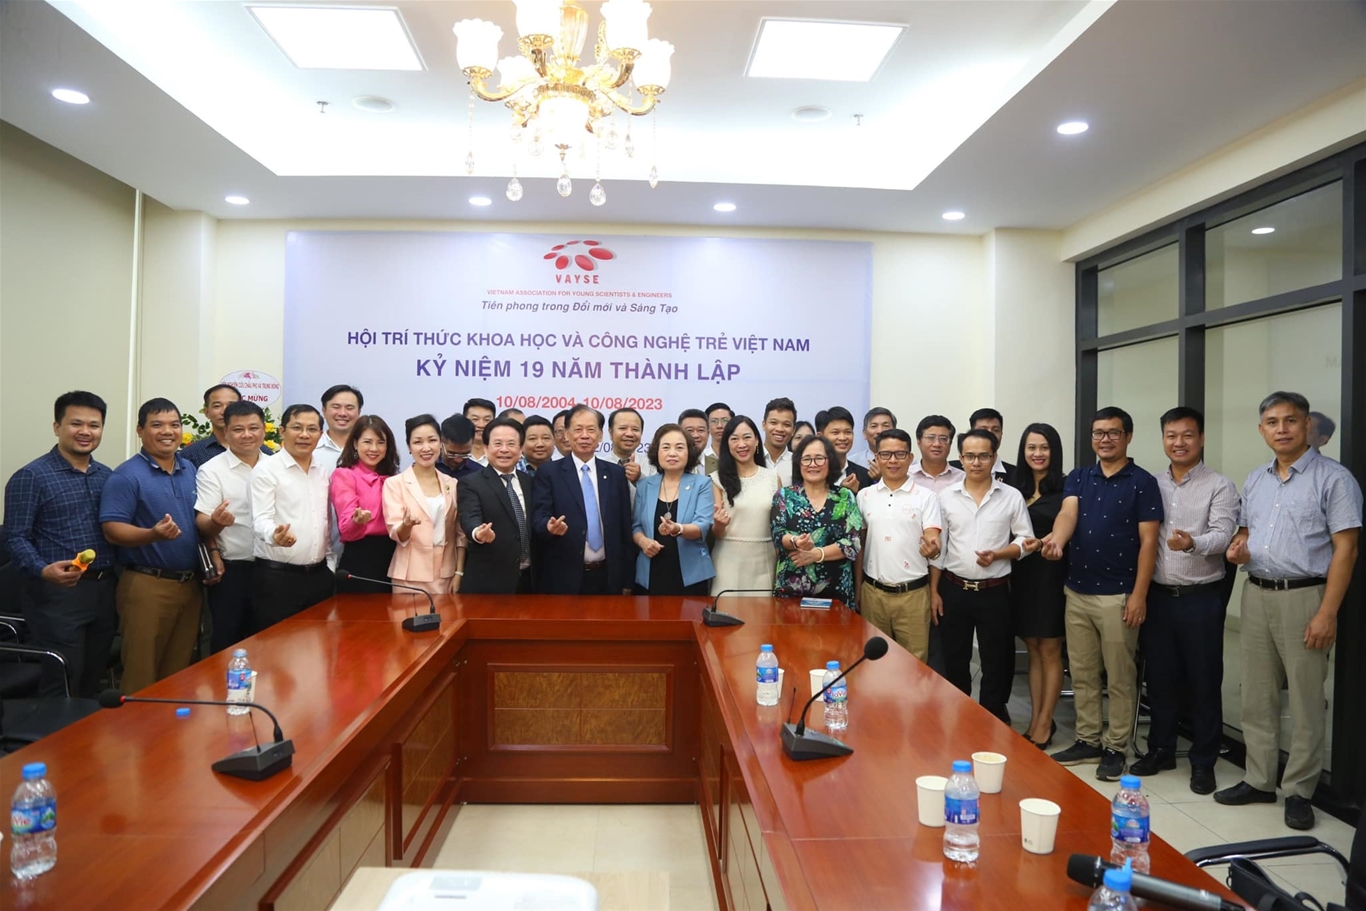 Kỷ niệm 19 năm thành lập Hội Trí thức Khoa học và Công nghệ trẻ Việt Nam